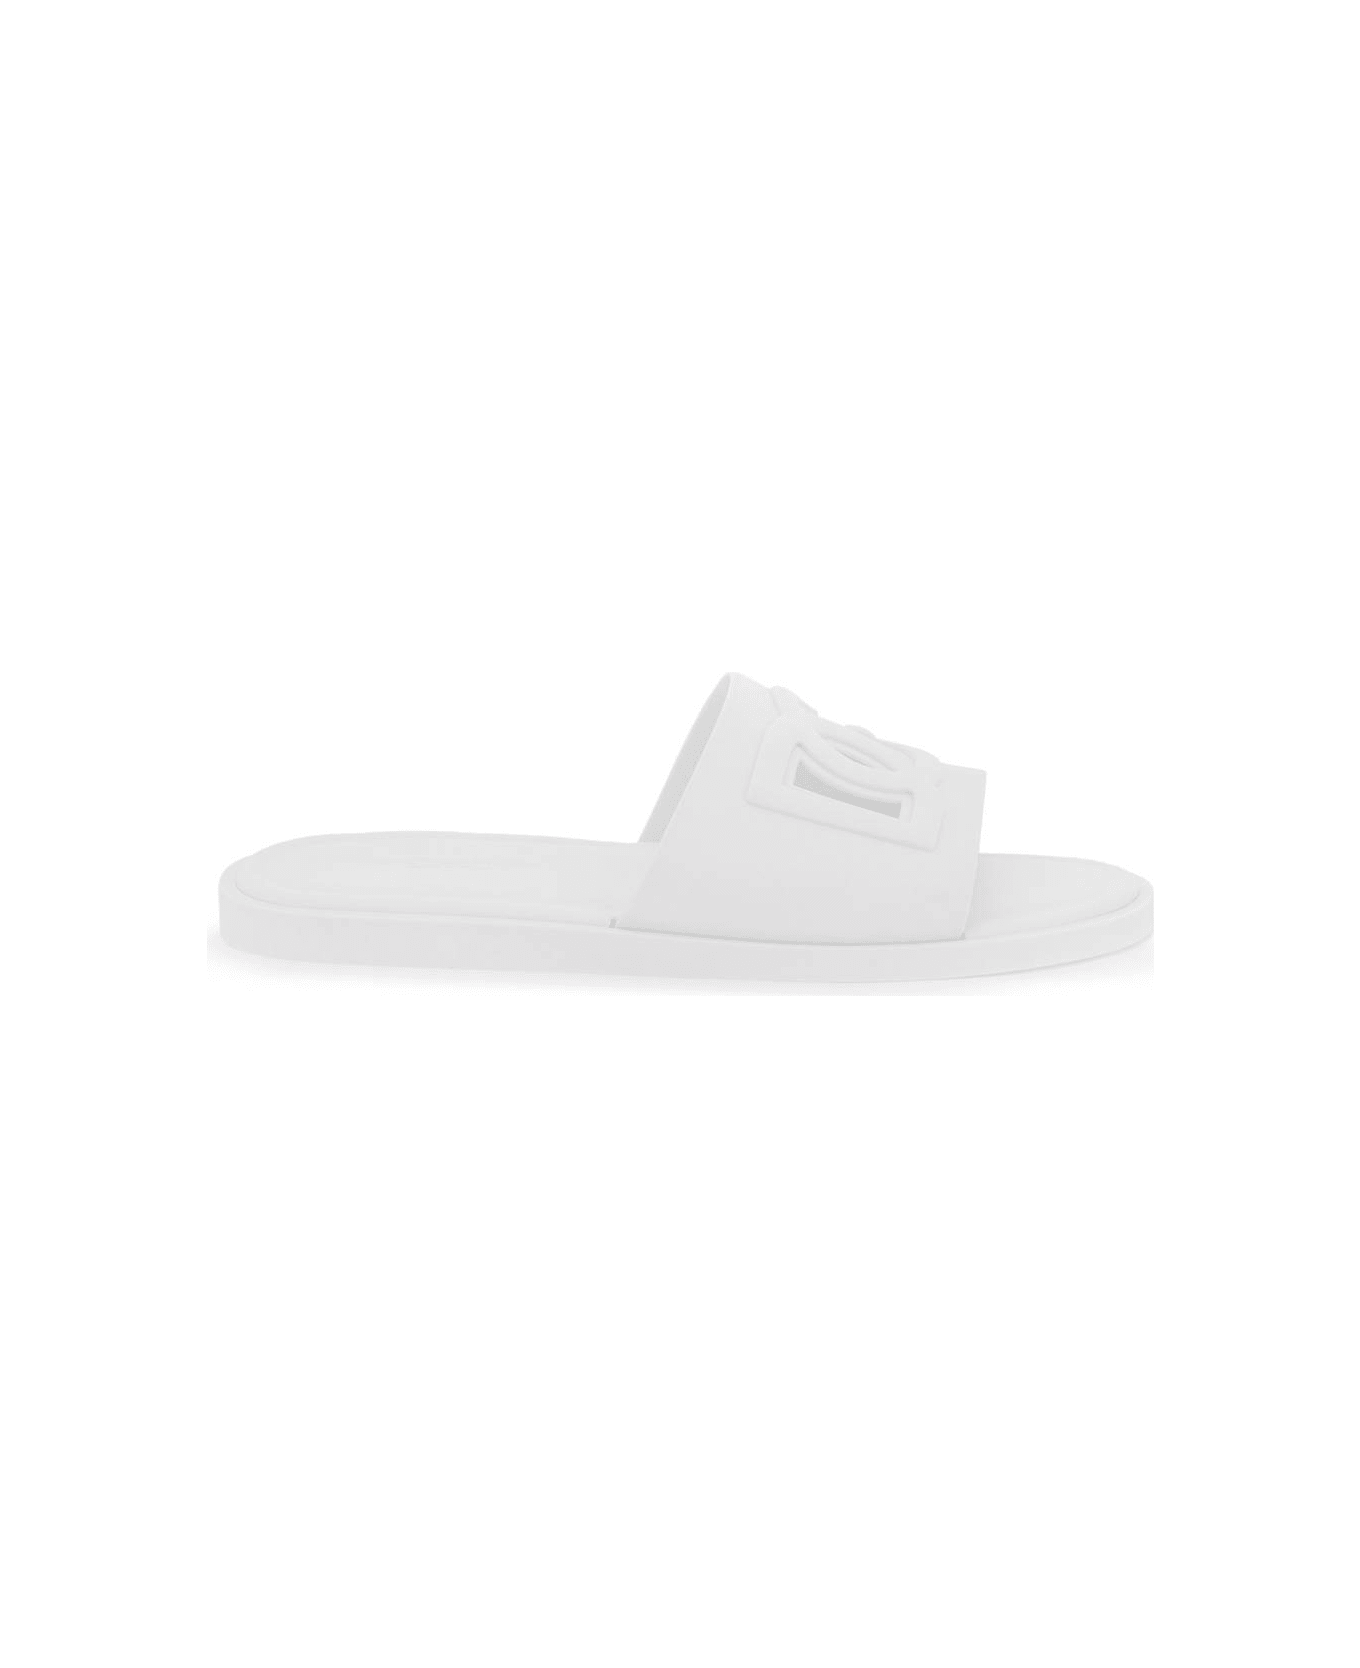 Dolce & Gabbana Dg Rubber Slides - BIANCO OTTICO (White)